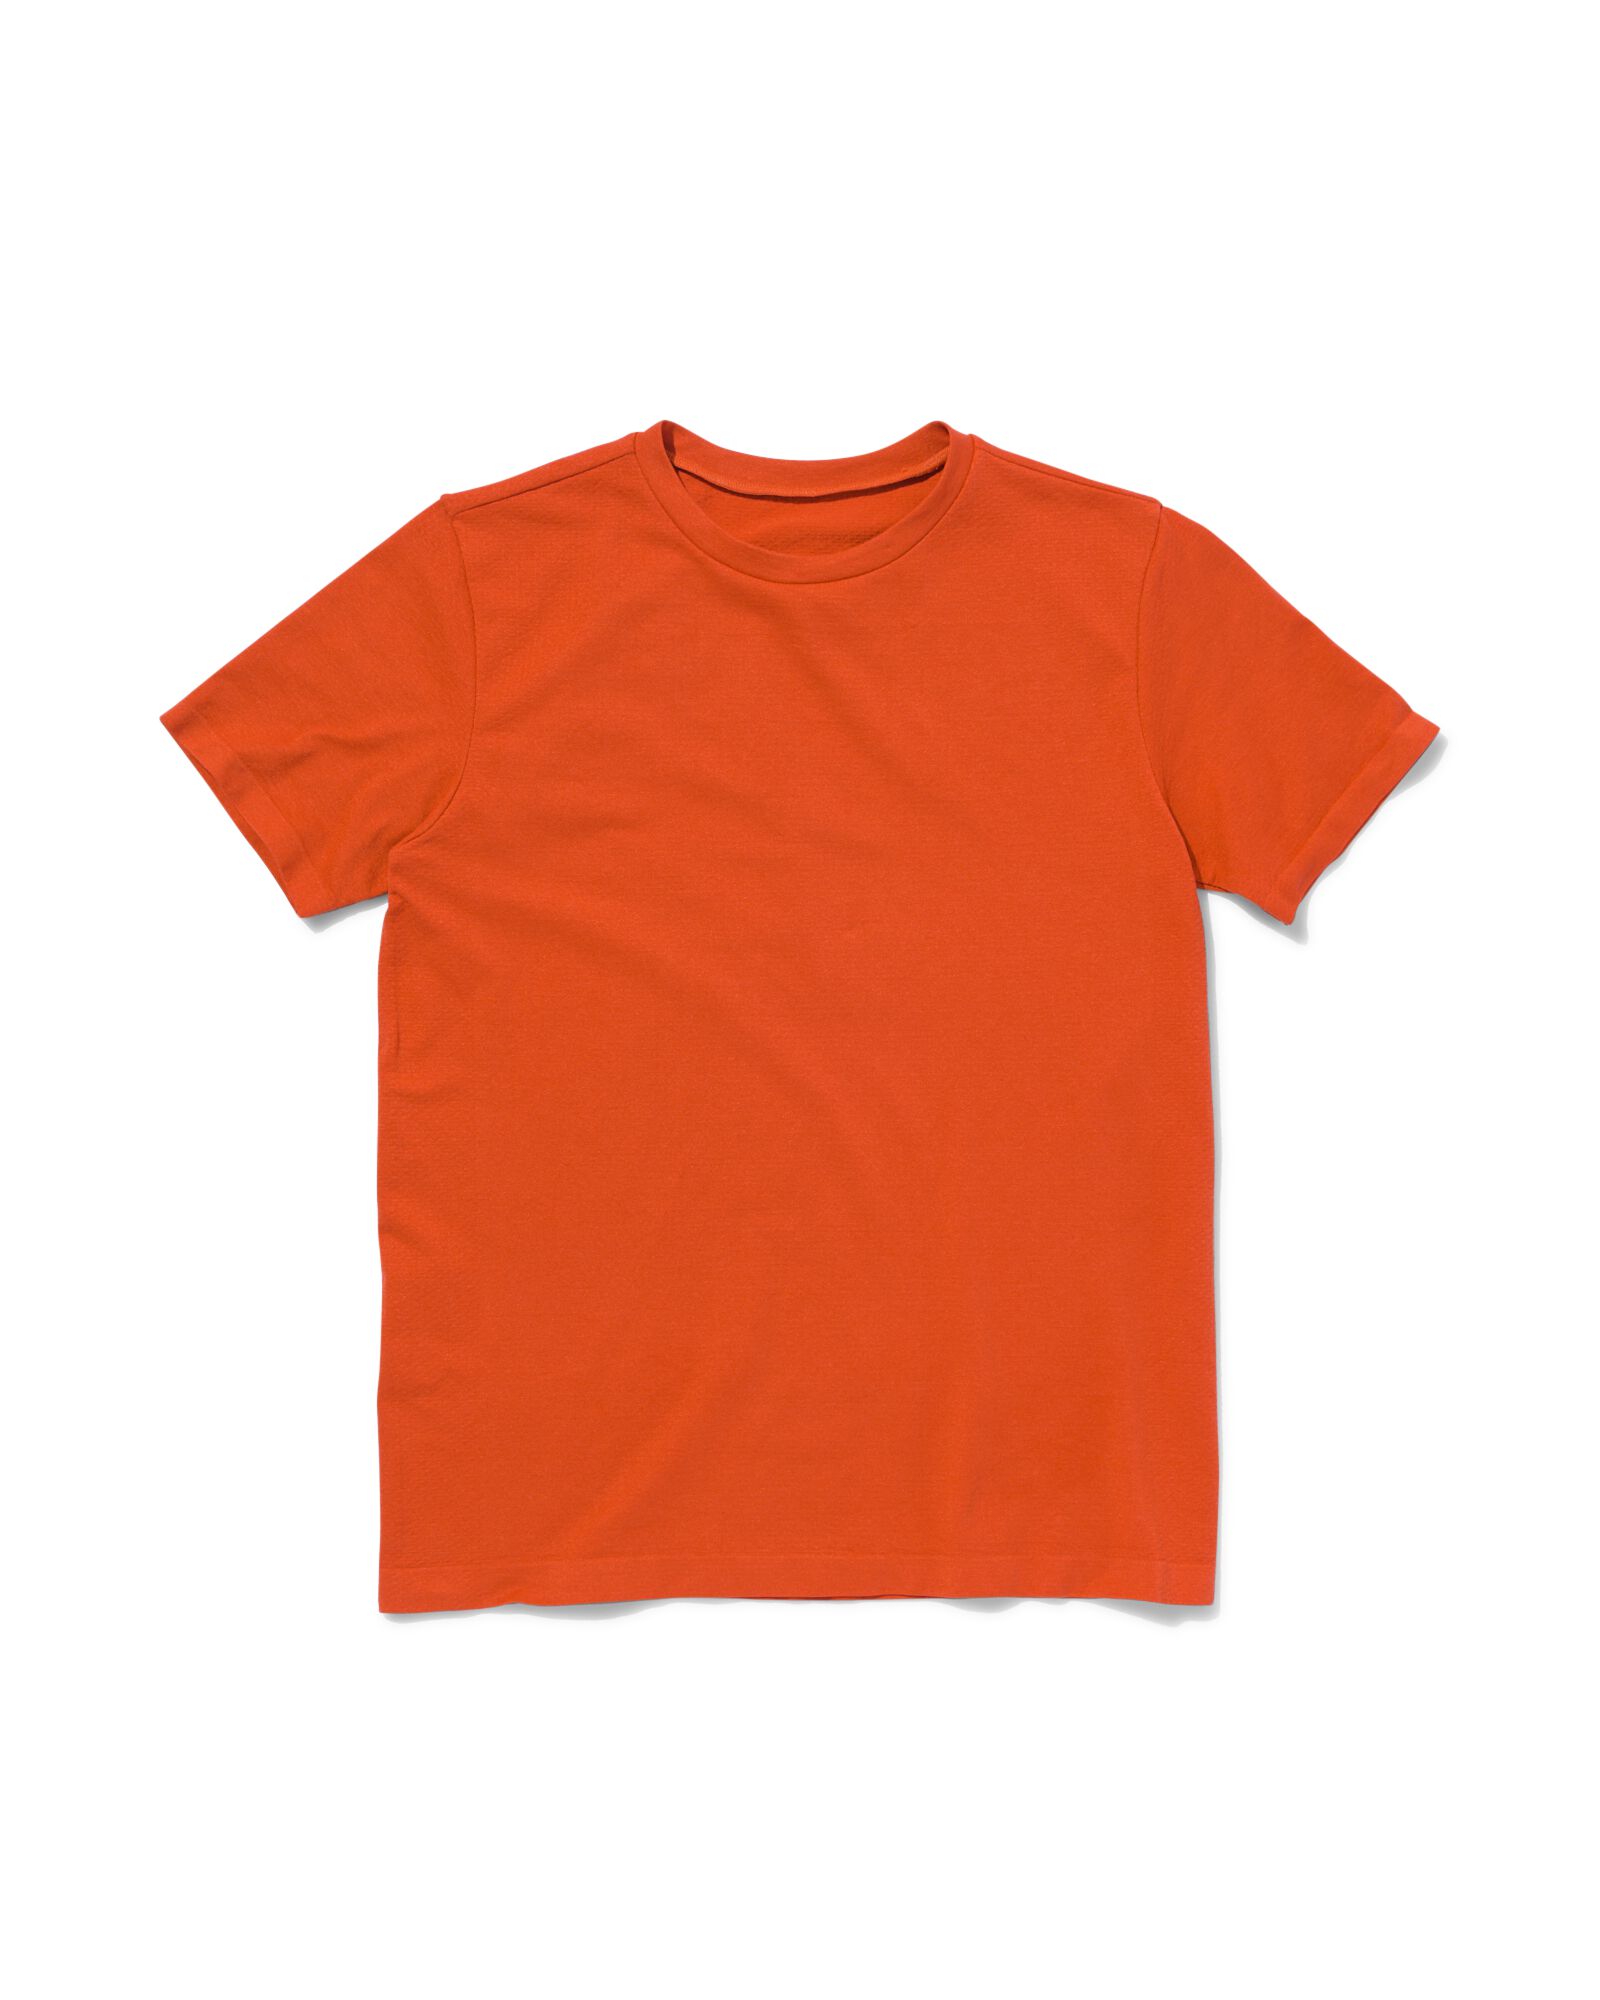 Kinder-Sportshirt, nahtlos orange 146/152 - 36090279 - HEMA